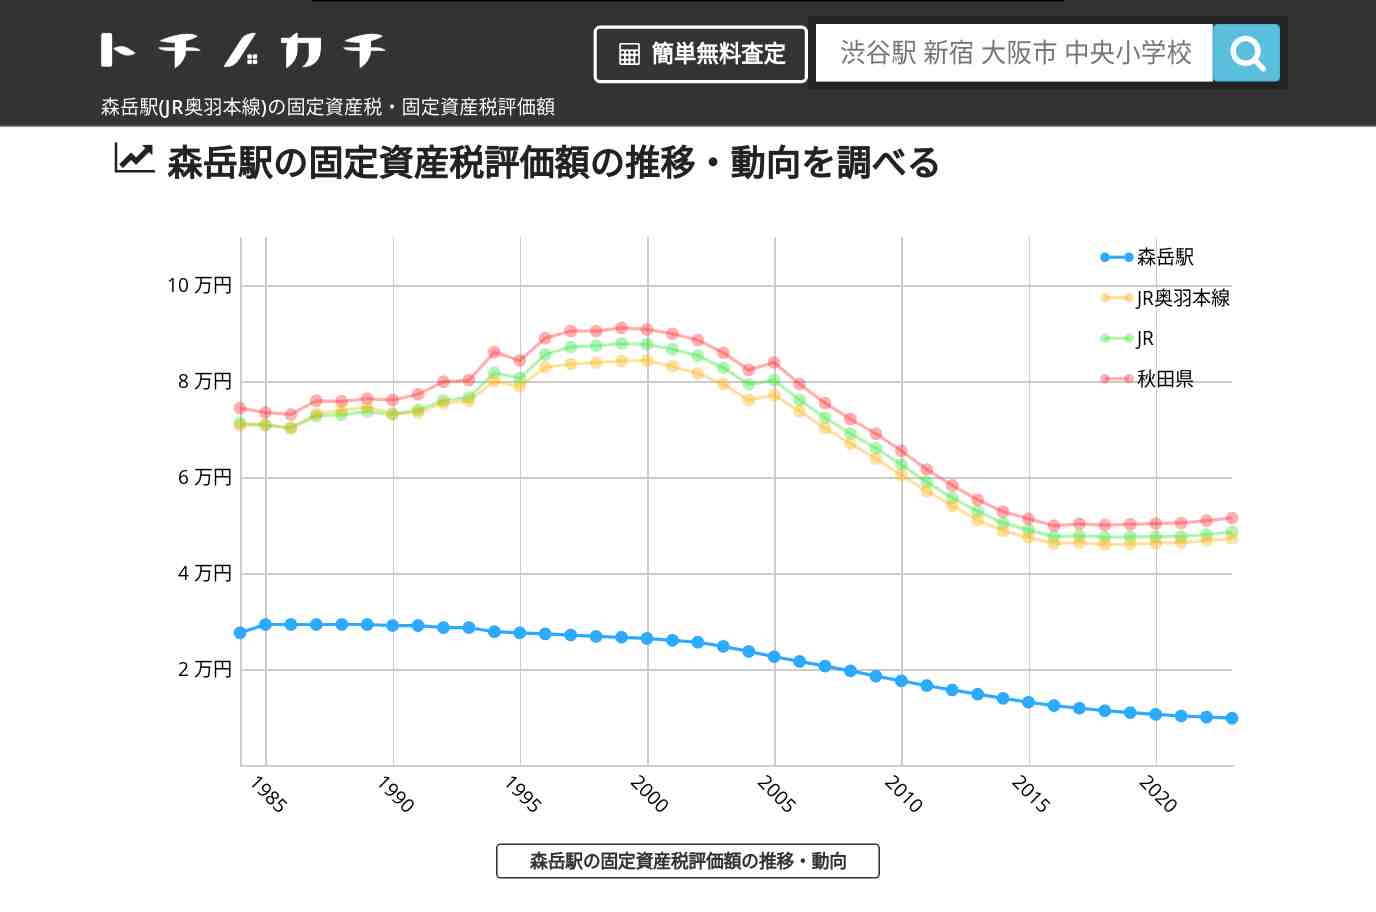 森岳駅(JR奥羽本線)の固定資産税・固定資産税評価額 | トチノカチ